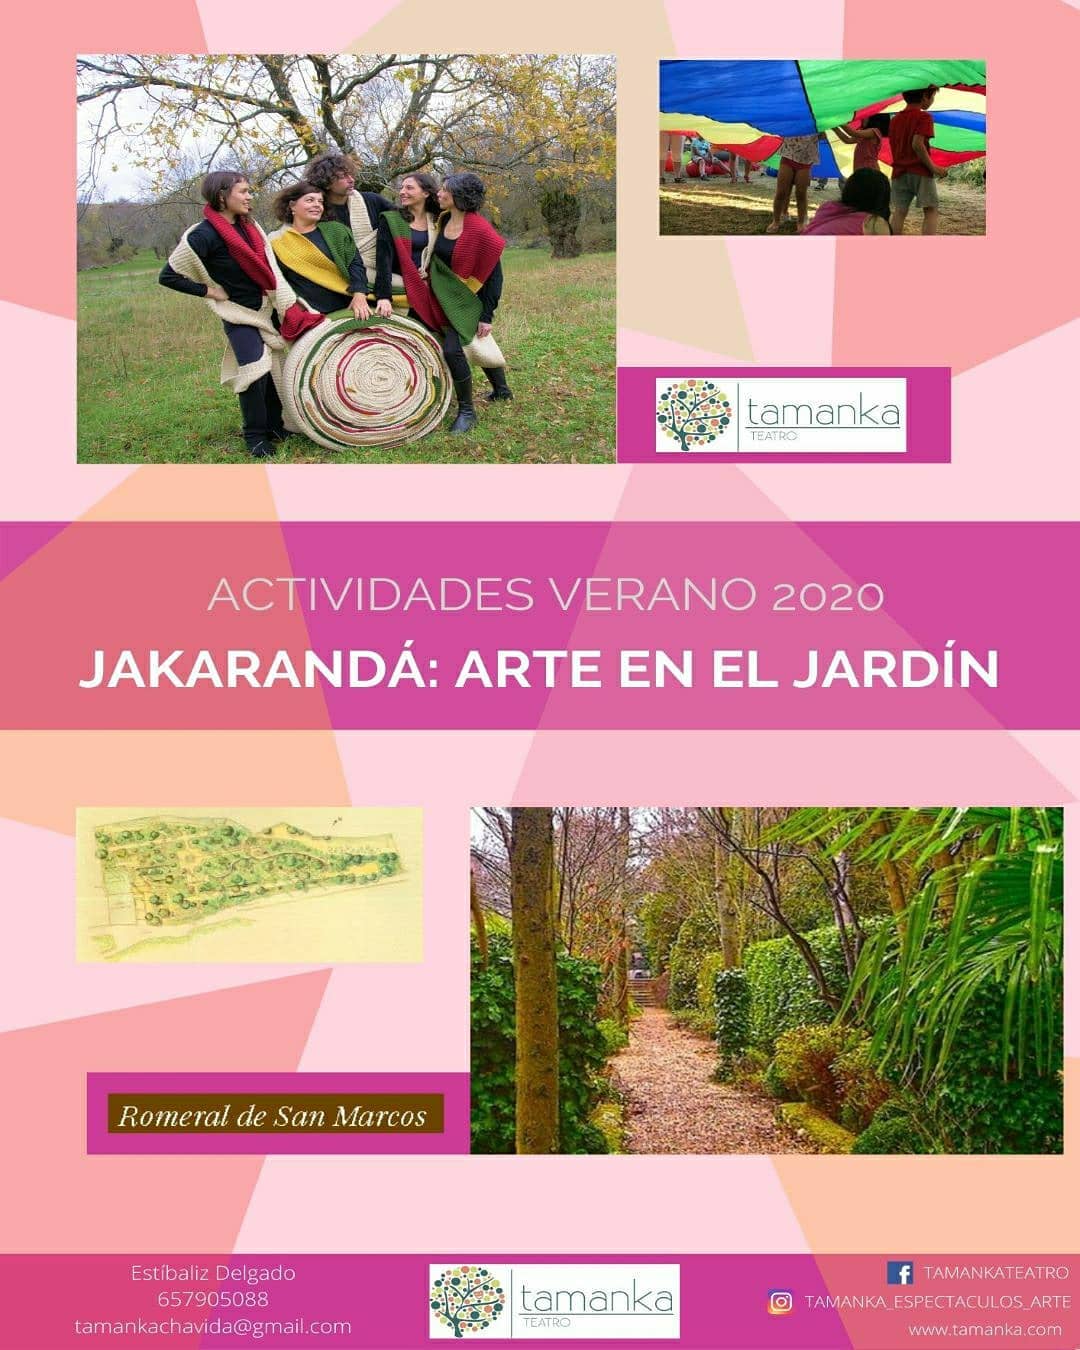 JAKARANDA ARTE EN EL JARDIN - ACTIVIDADES VERANO 2020